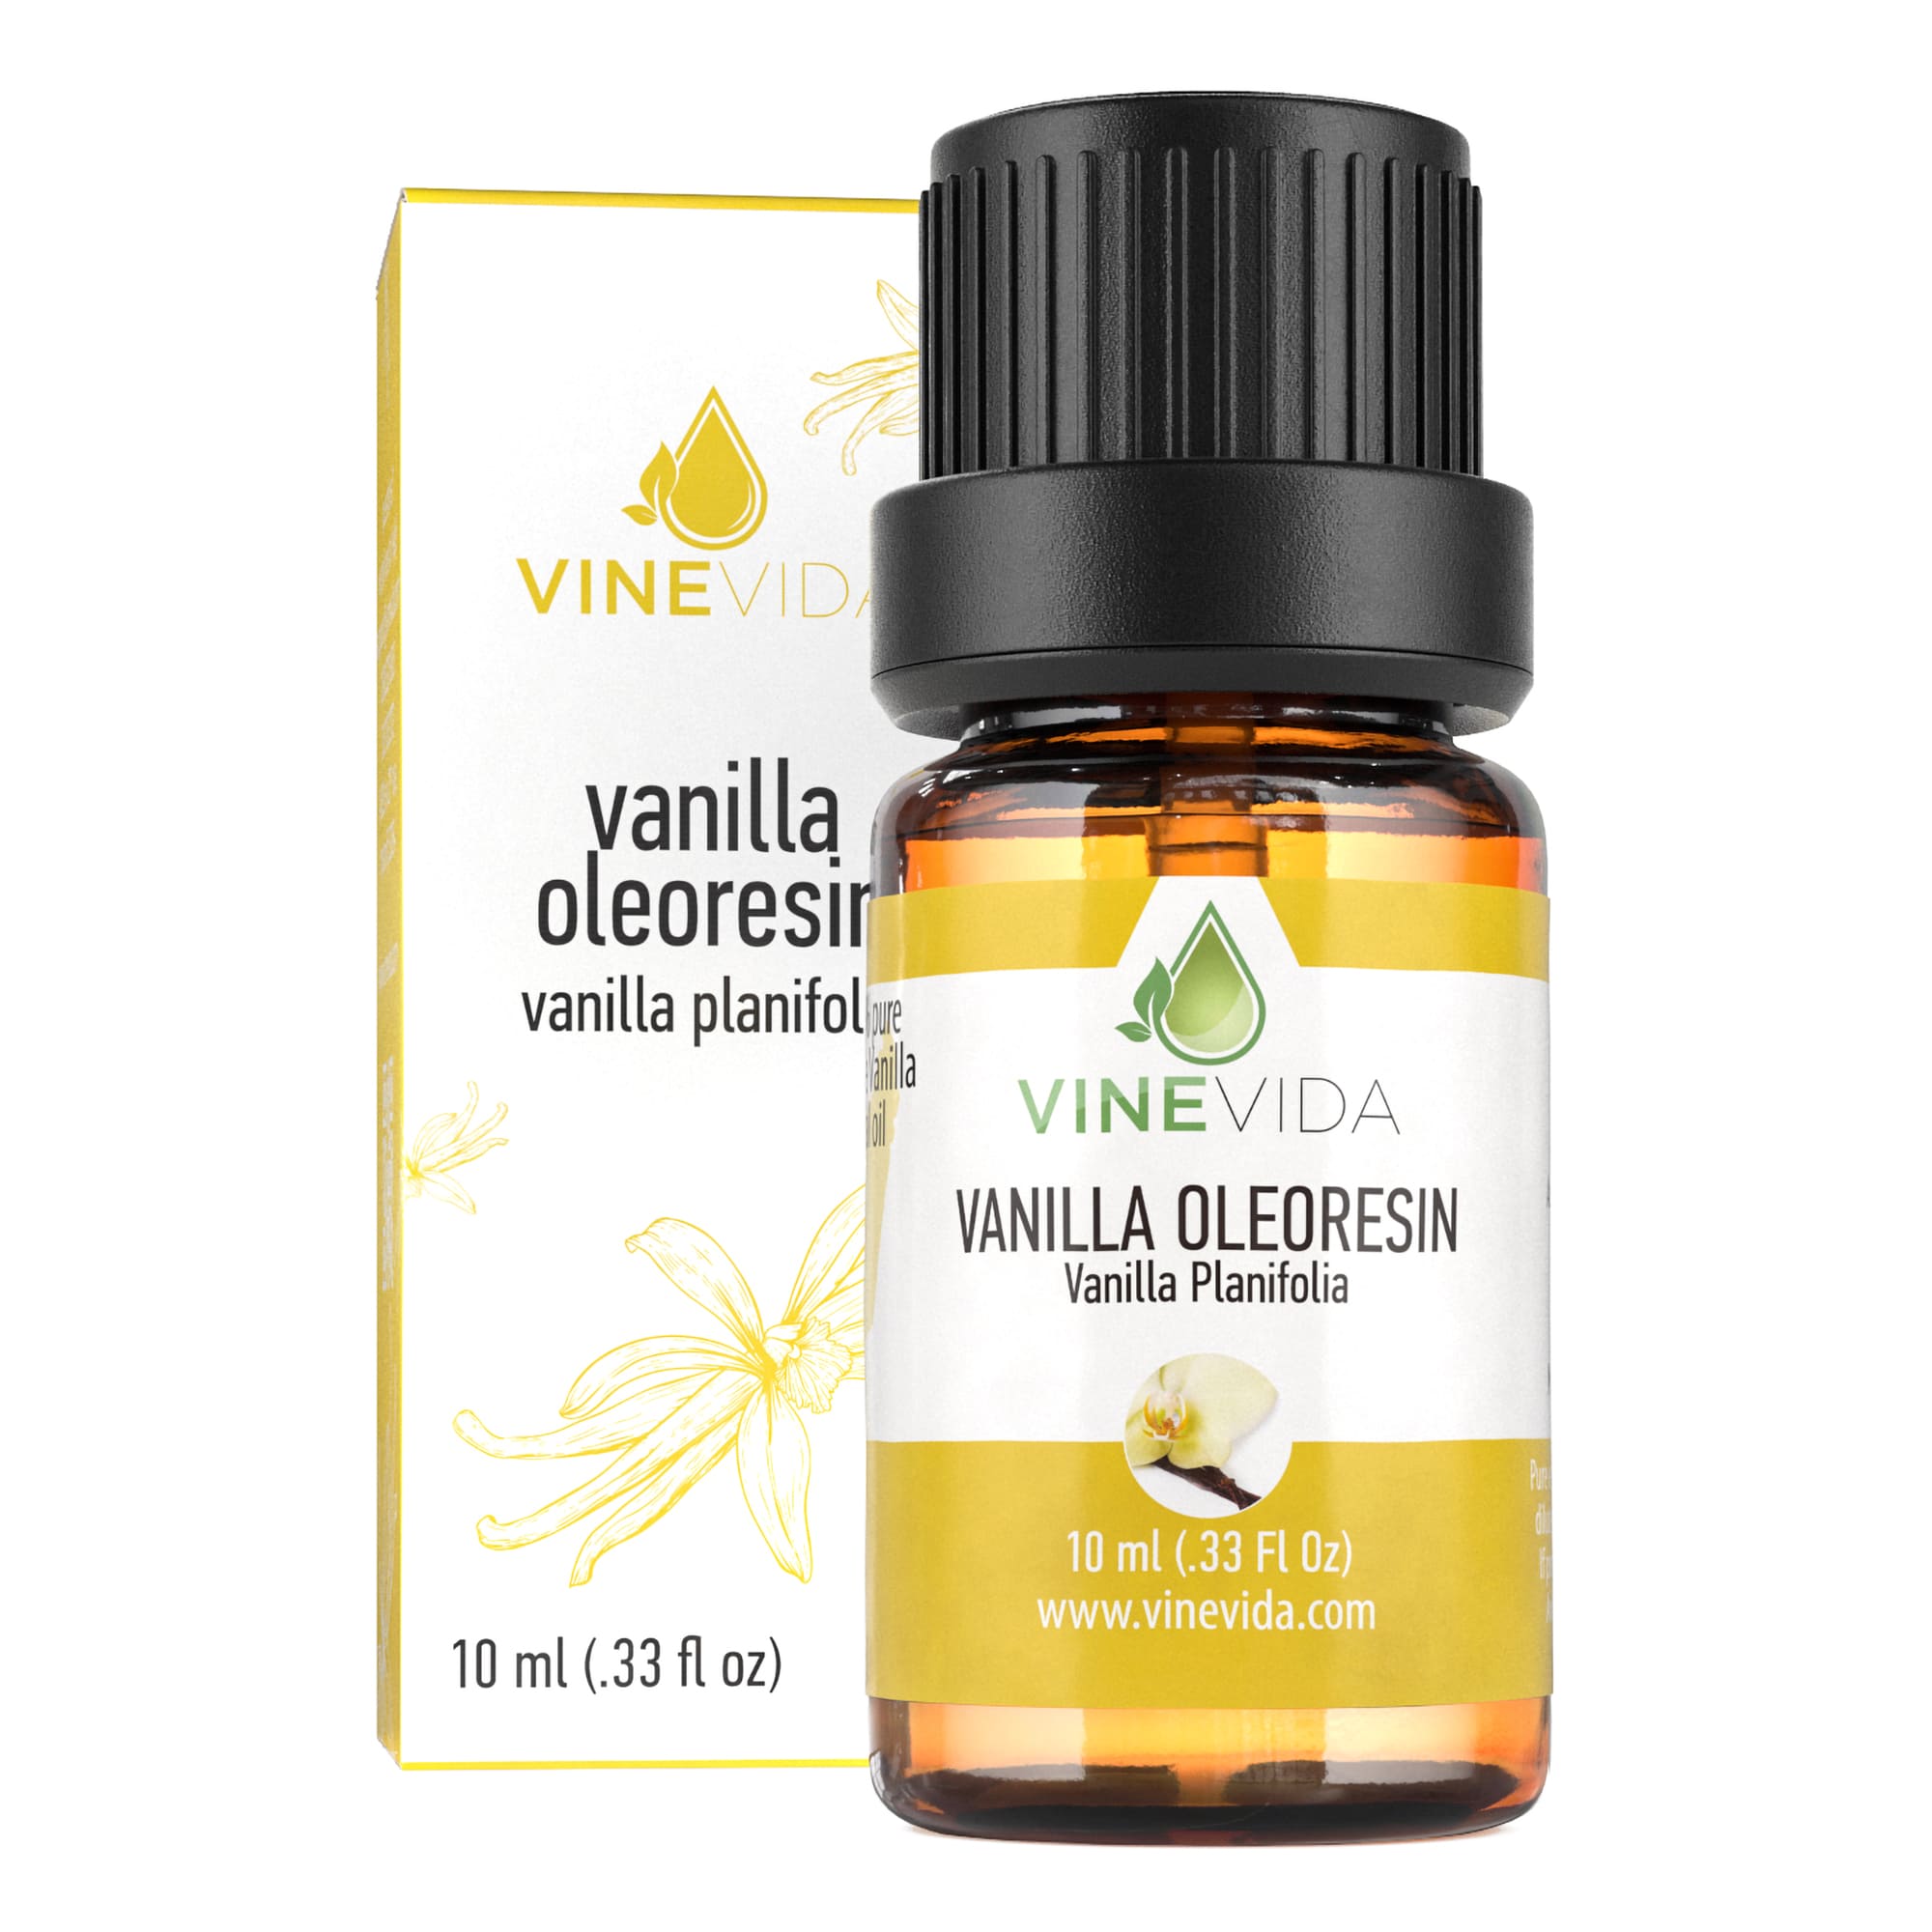 Vanilla essential oil benefits  Essential oils herbs, Vanilla essential  oil, Organic oil